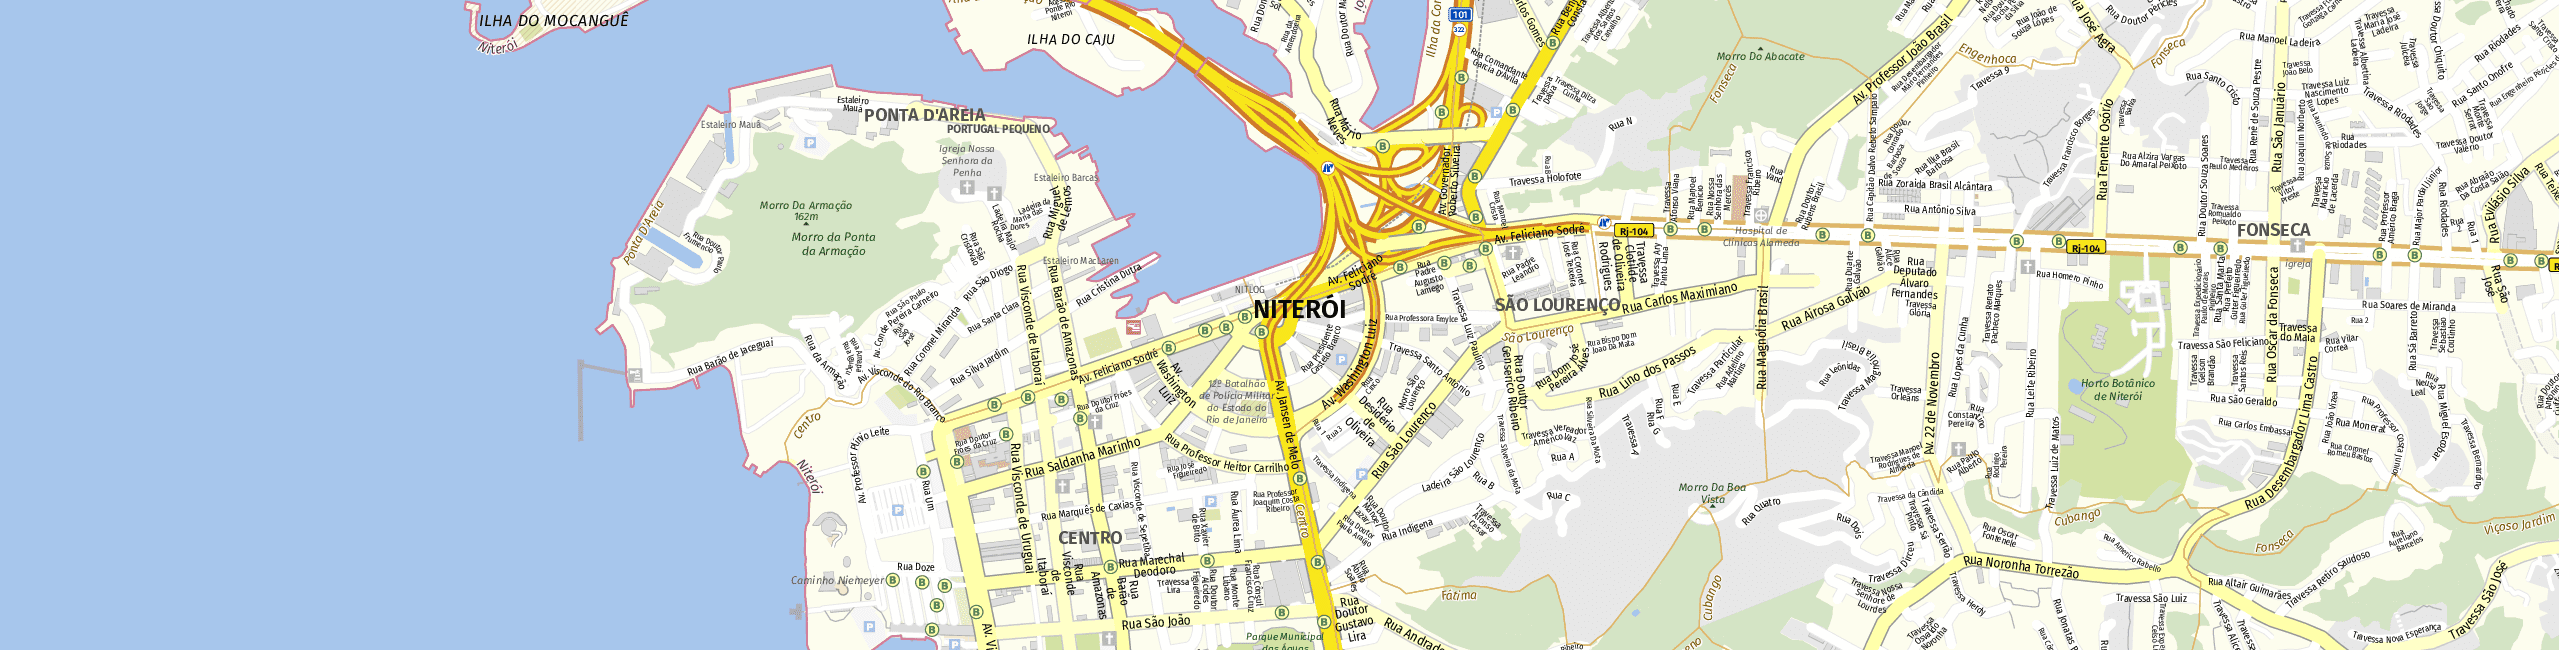 Stadtplan Niterói zum Downloaden.